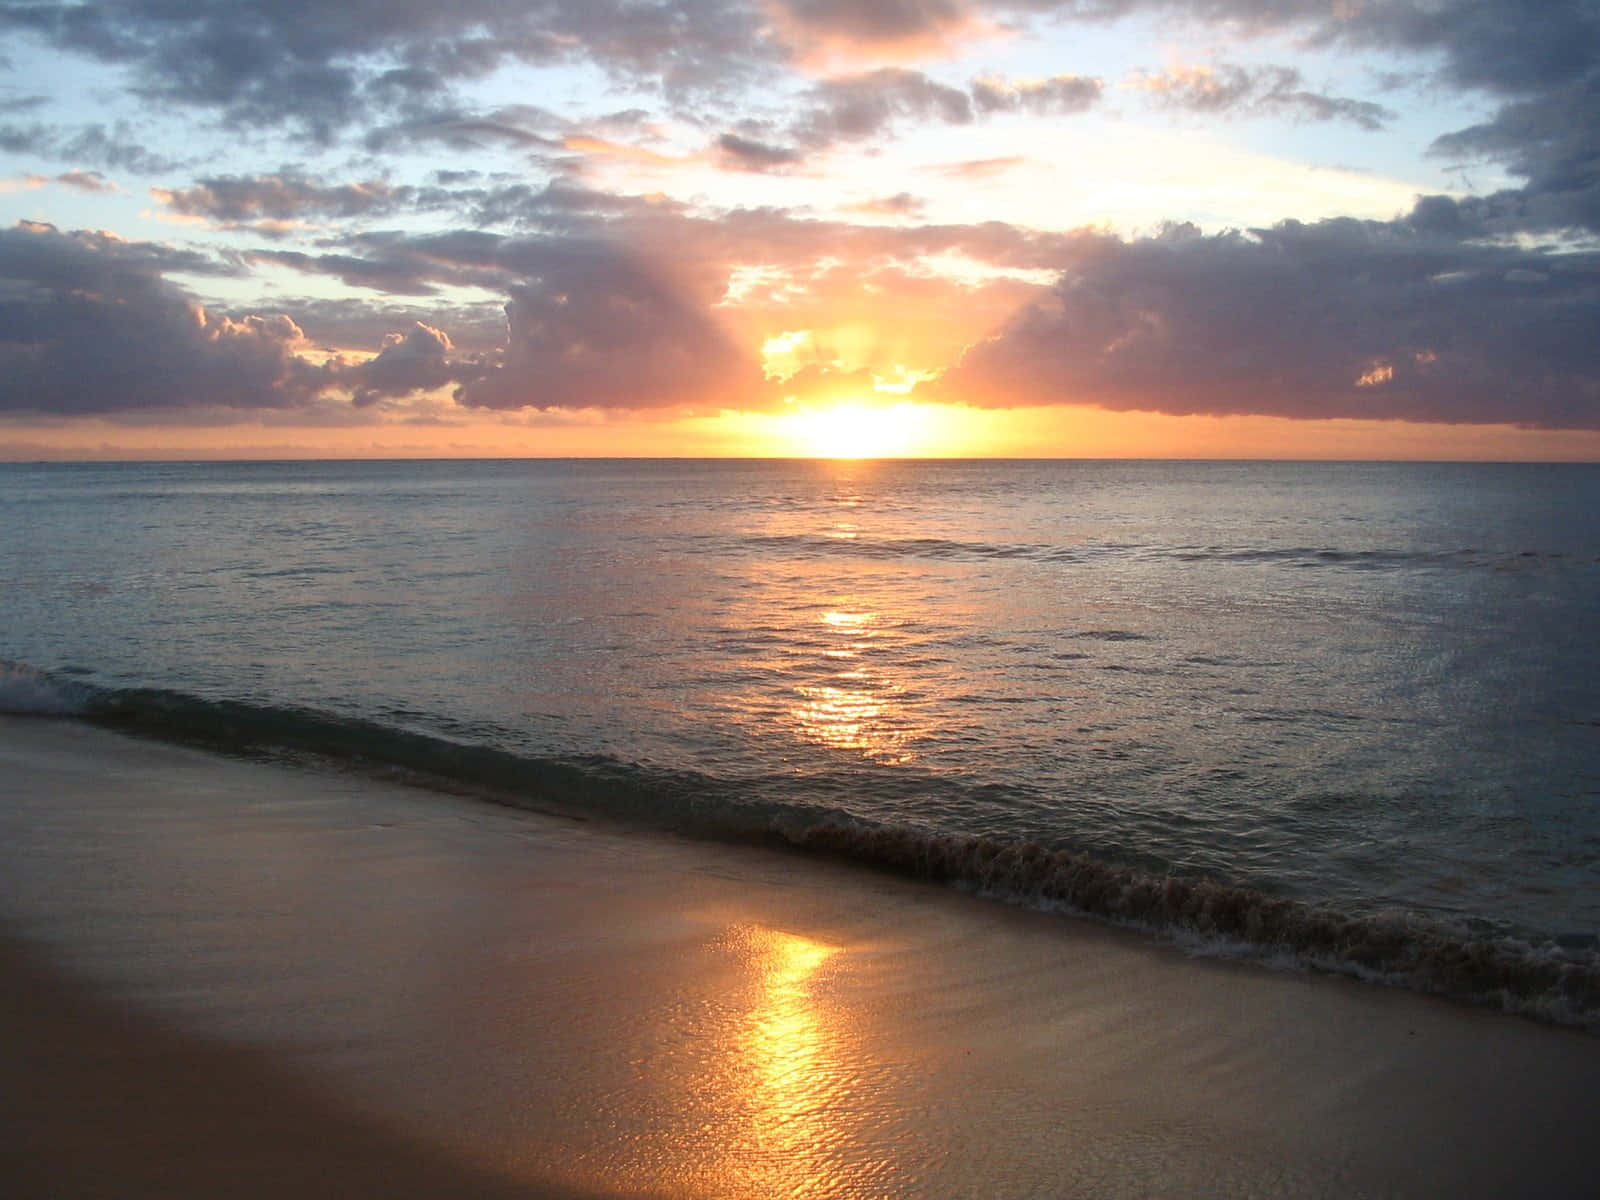 Unmomento Solitario De Paz Y Serenidad Contemplando El Sol Que Se Pone Sobre La Playa.